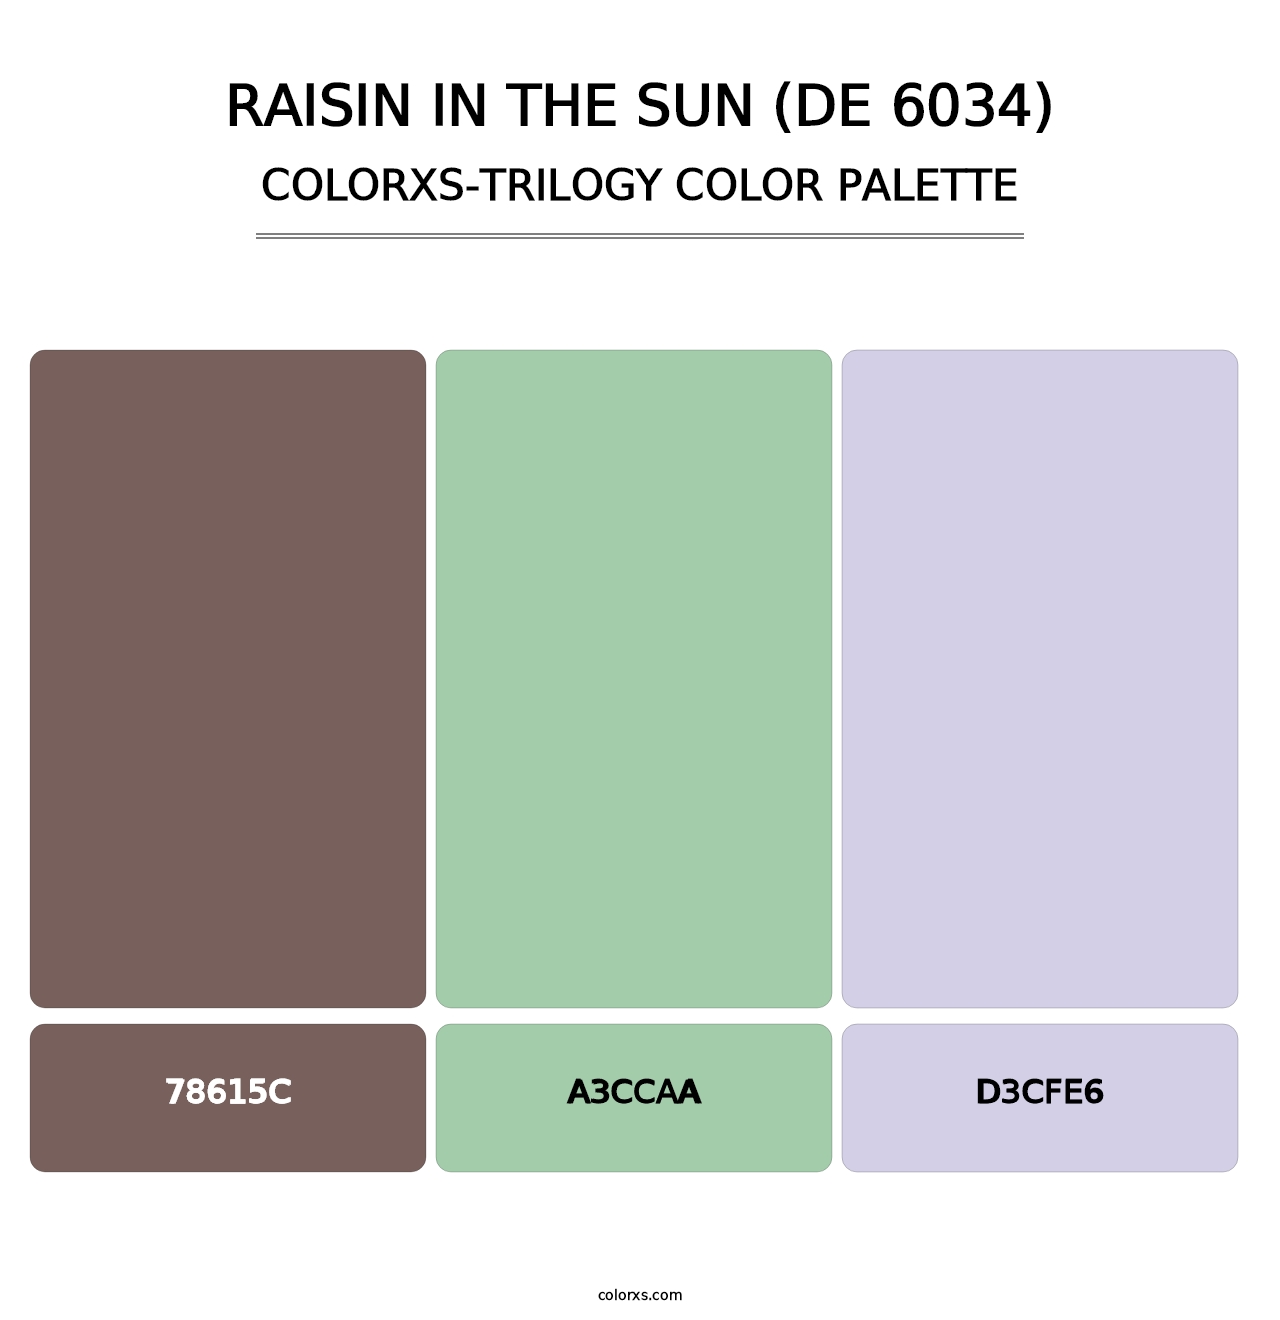 Raisin in the Sun (DE 6034) - Colorxs Trilogy Palette